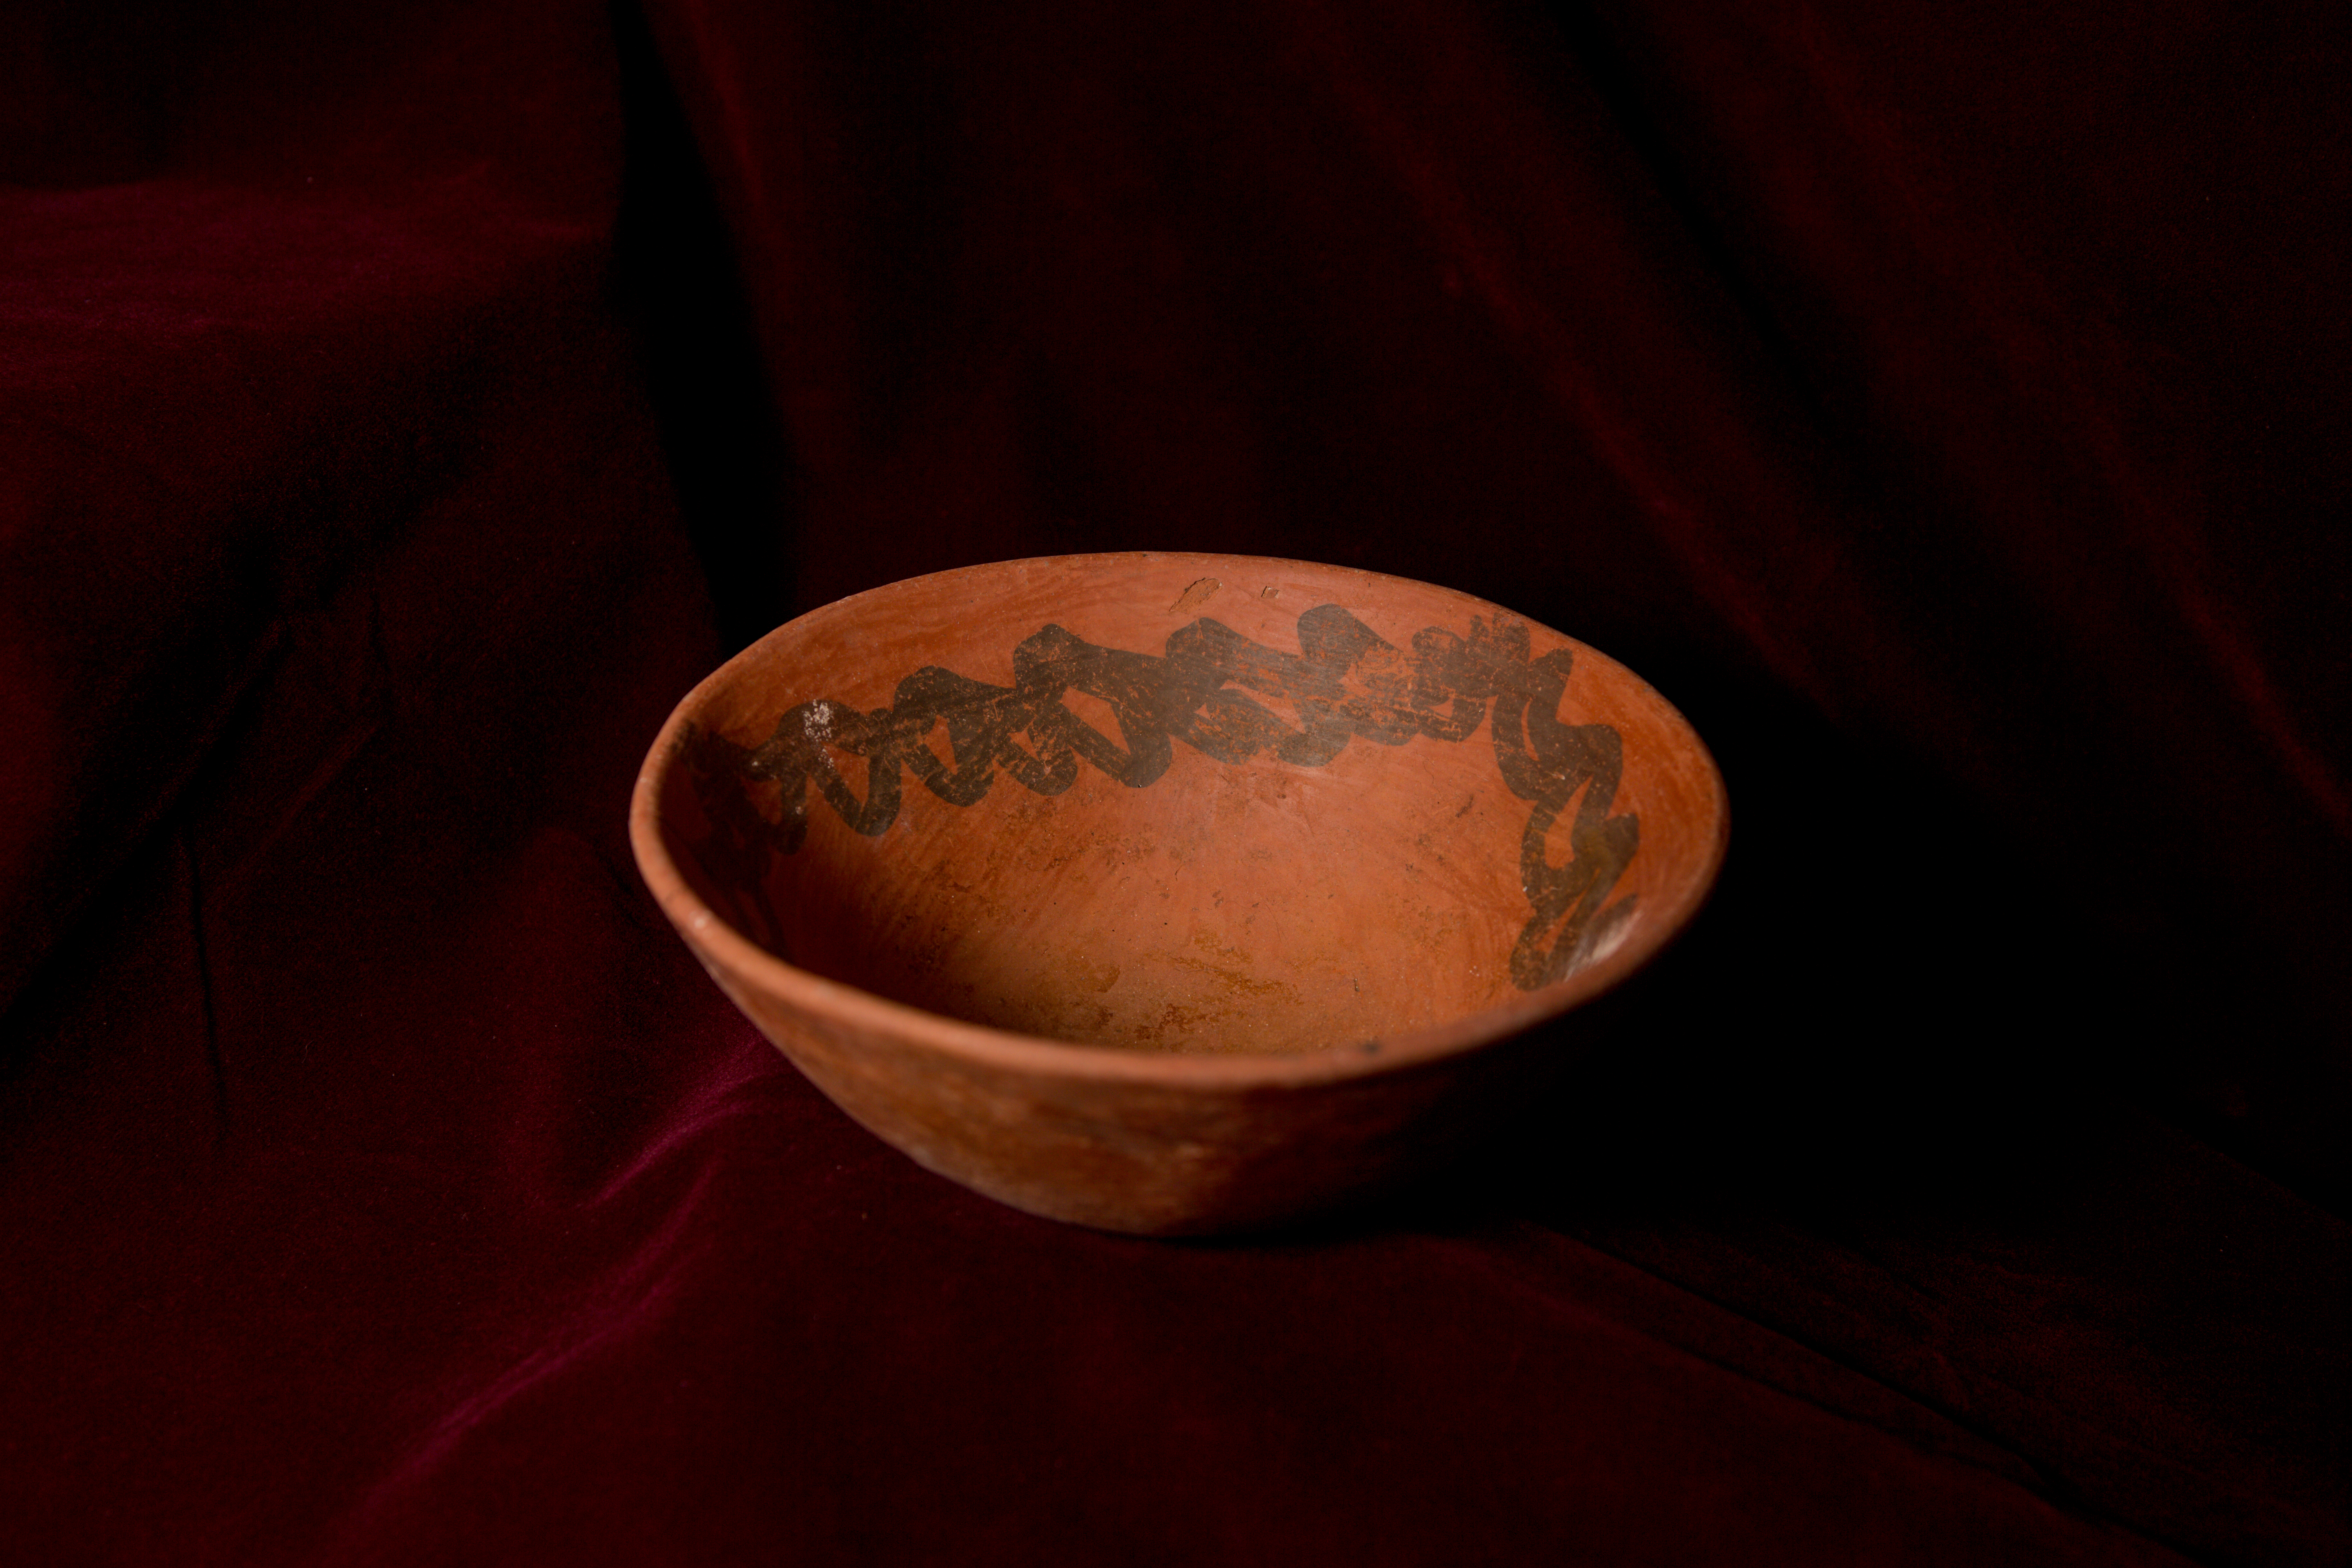 Artifact from Peru